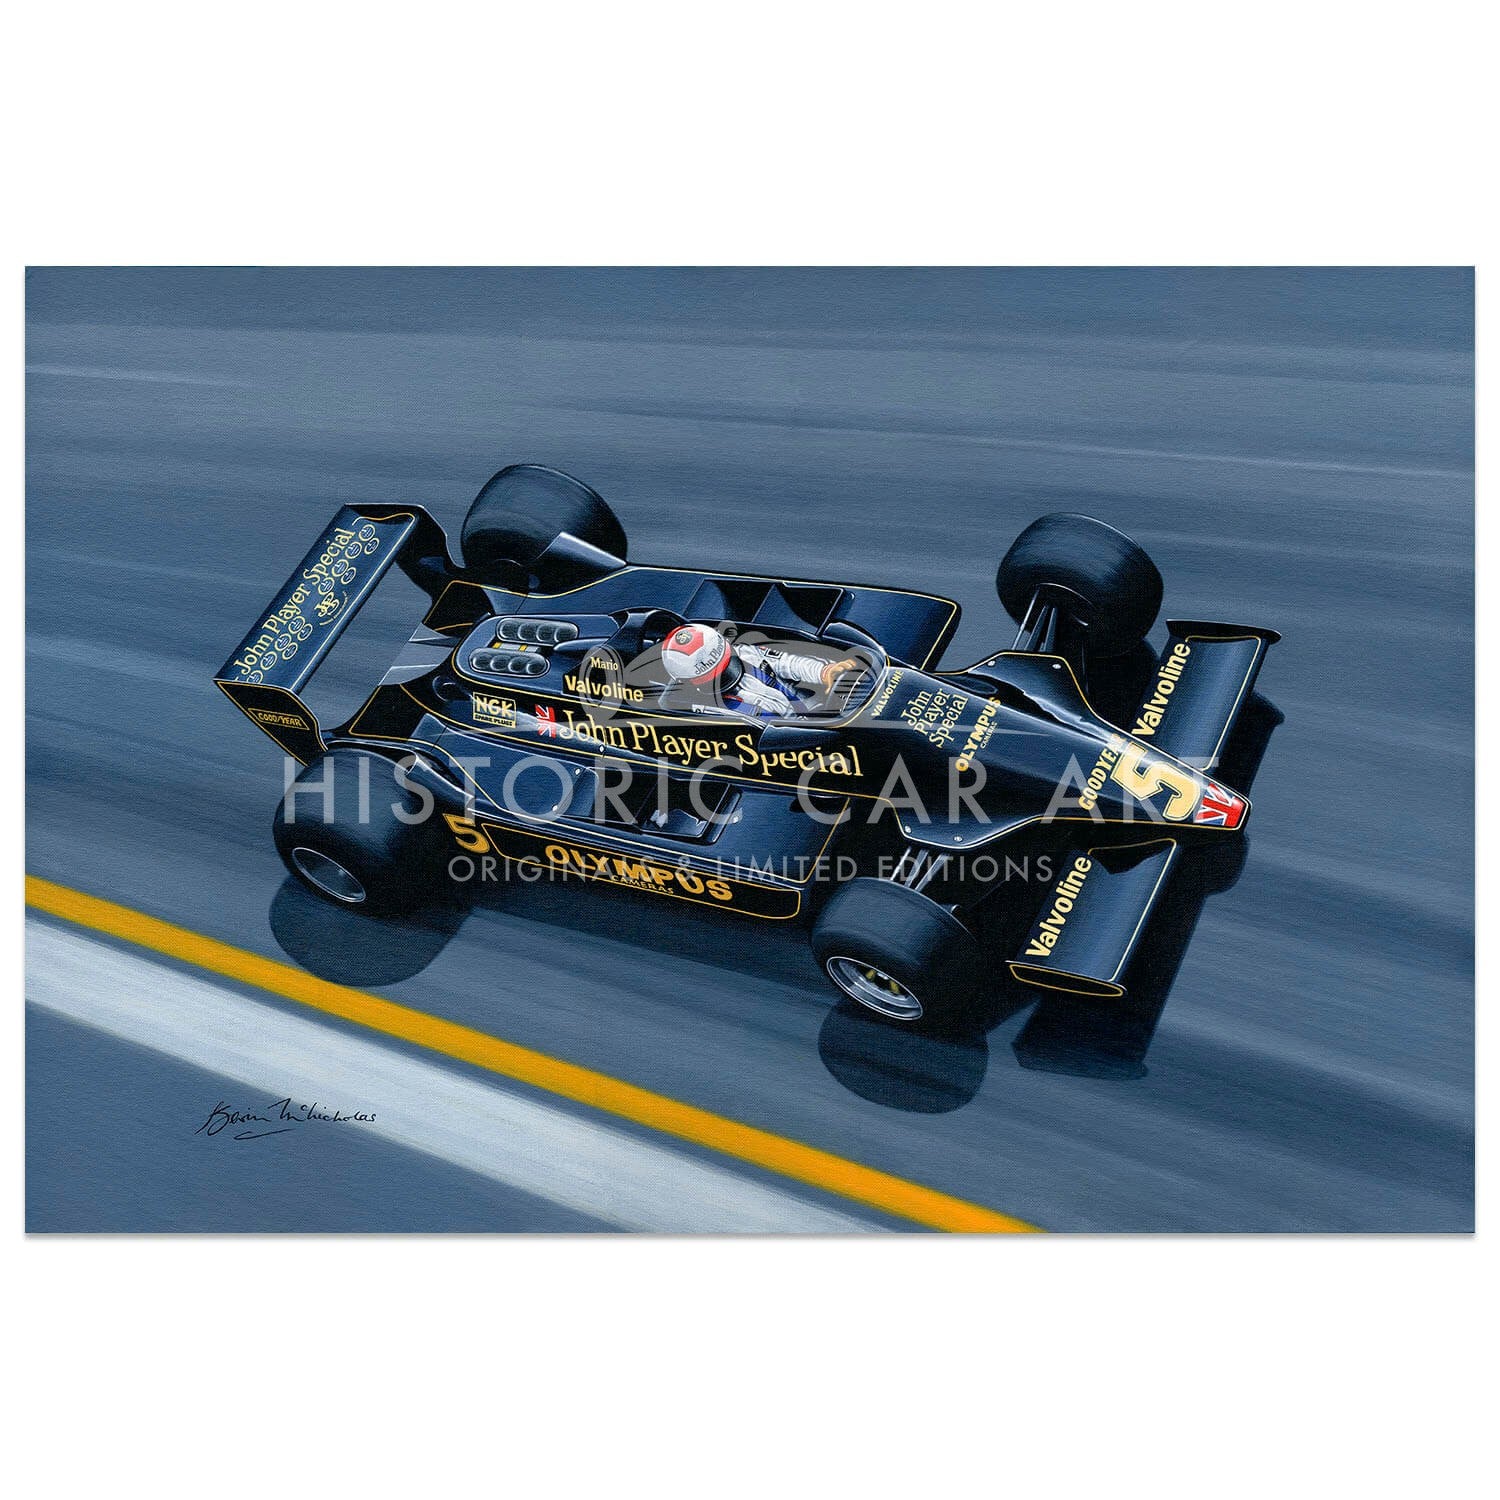 Super Mario | Mario Andretti | Lotus 79 | Artwork